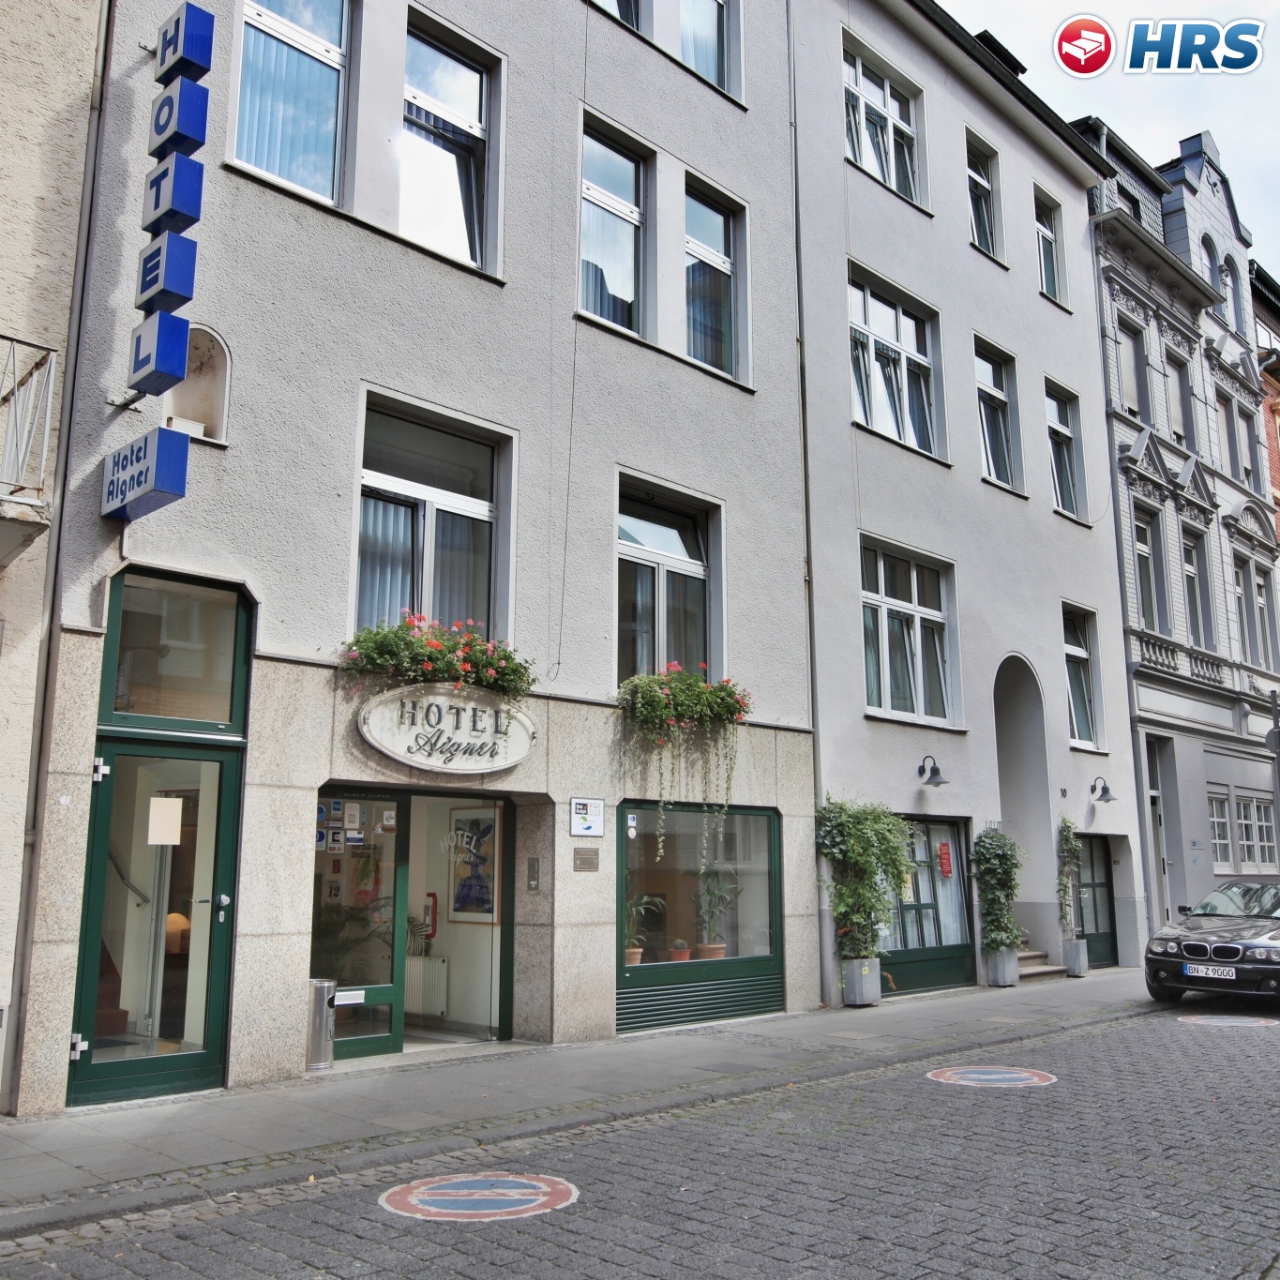 Hotel Aigner - 3 HRS star hotel in Bonn (North Rhine-Westphalia)